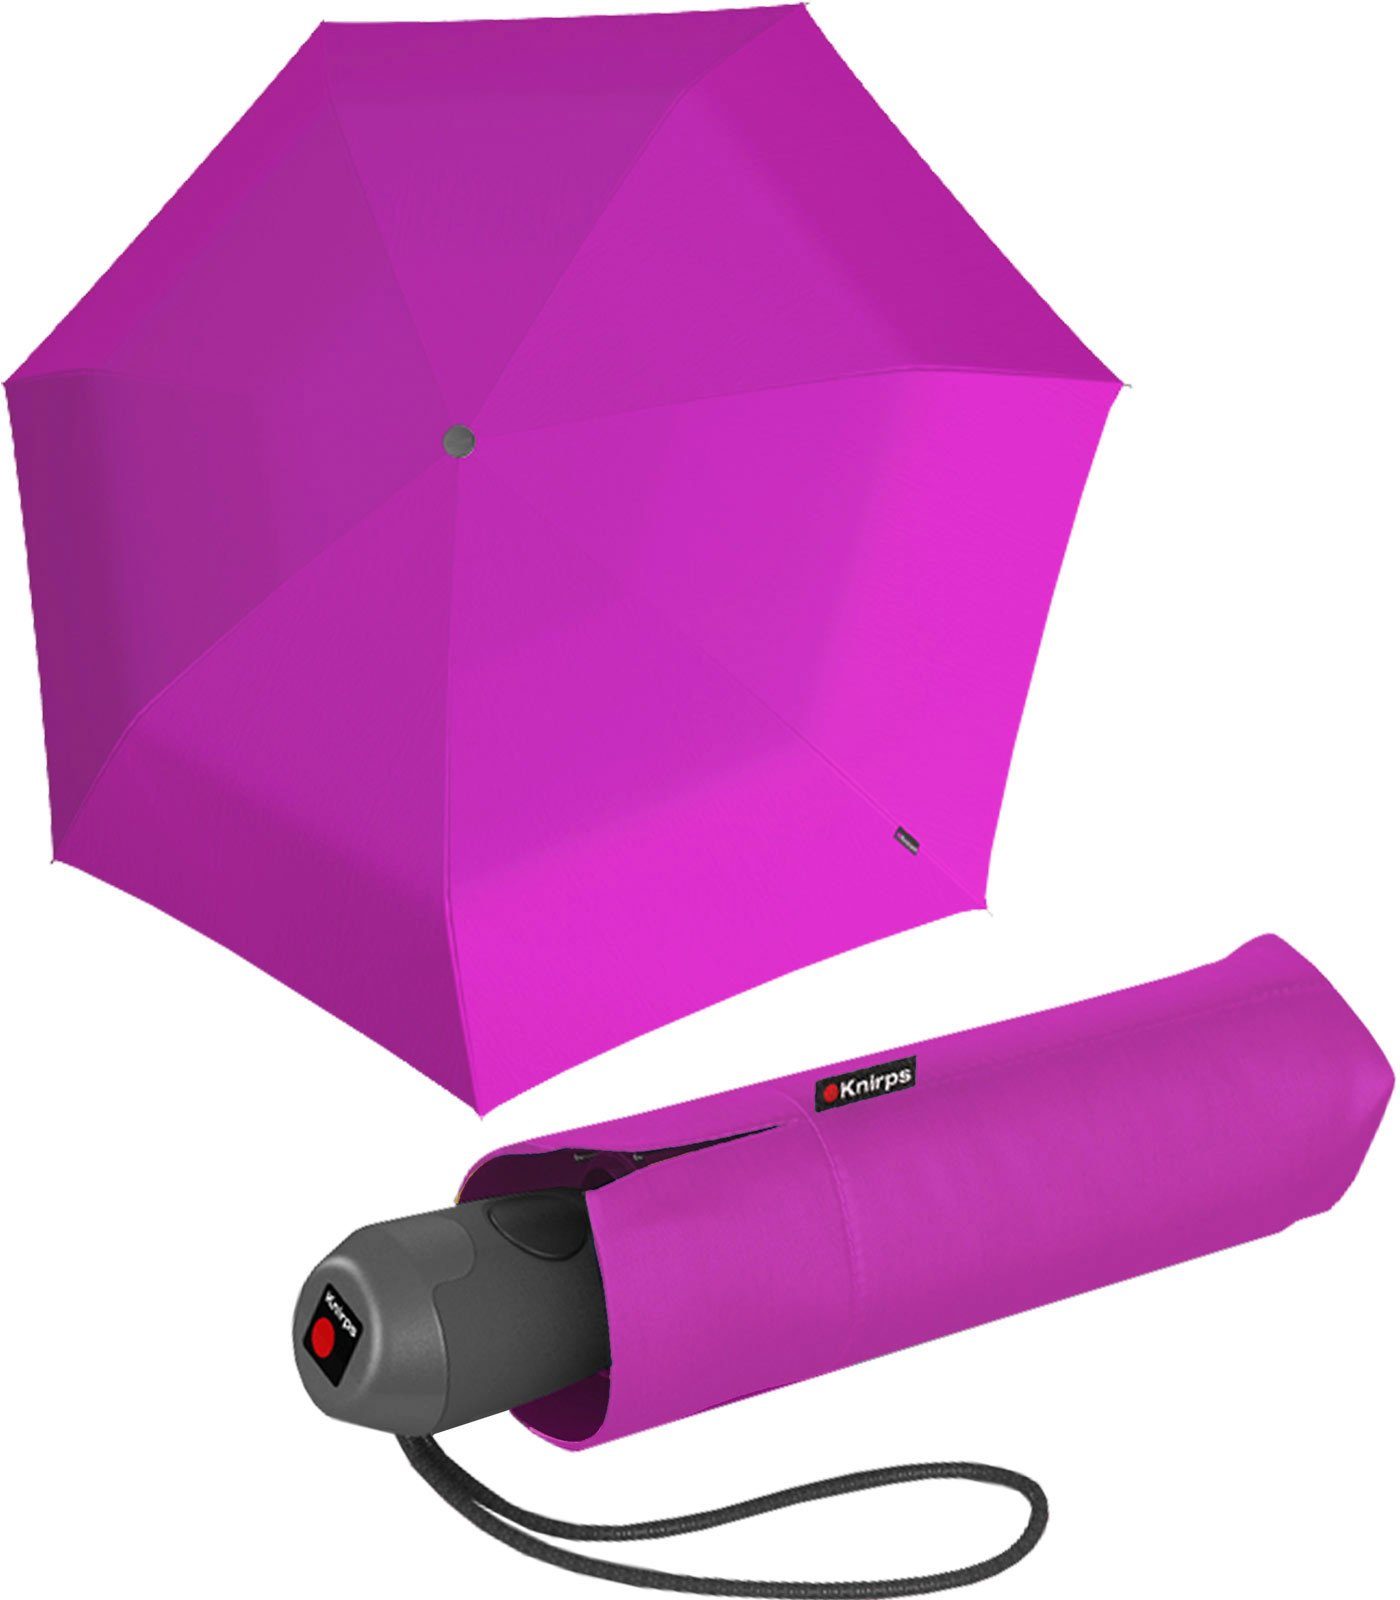 Taschenregenschirm kleiner, Automatikschirm Handtasche E.100 die Mini-Schirm mit kompakter Auf-Zu-Automatik, Knirps® für